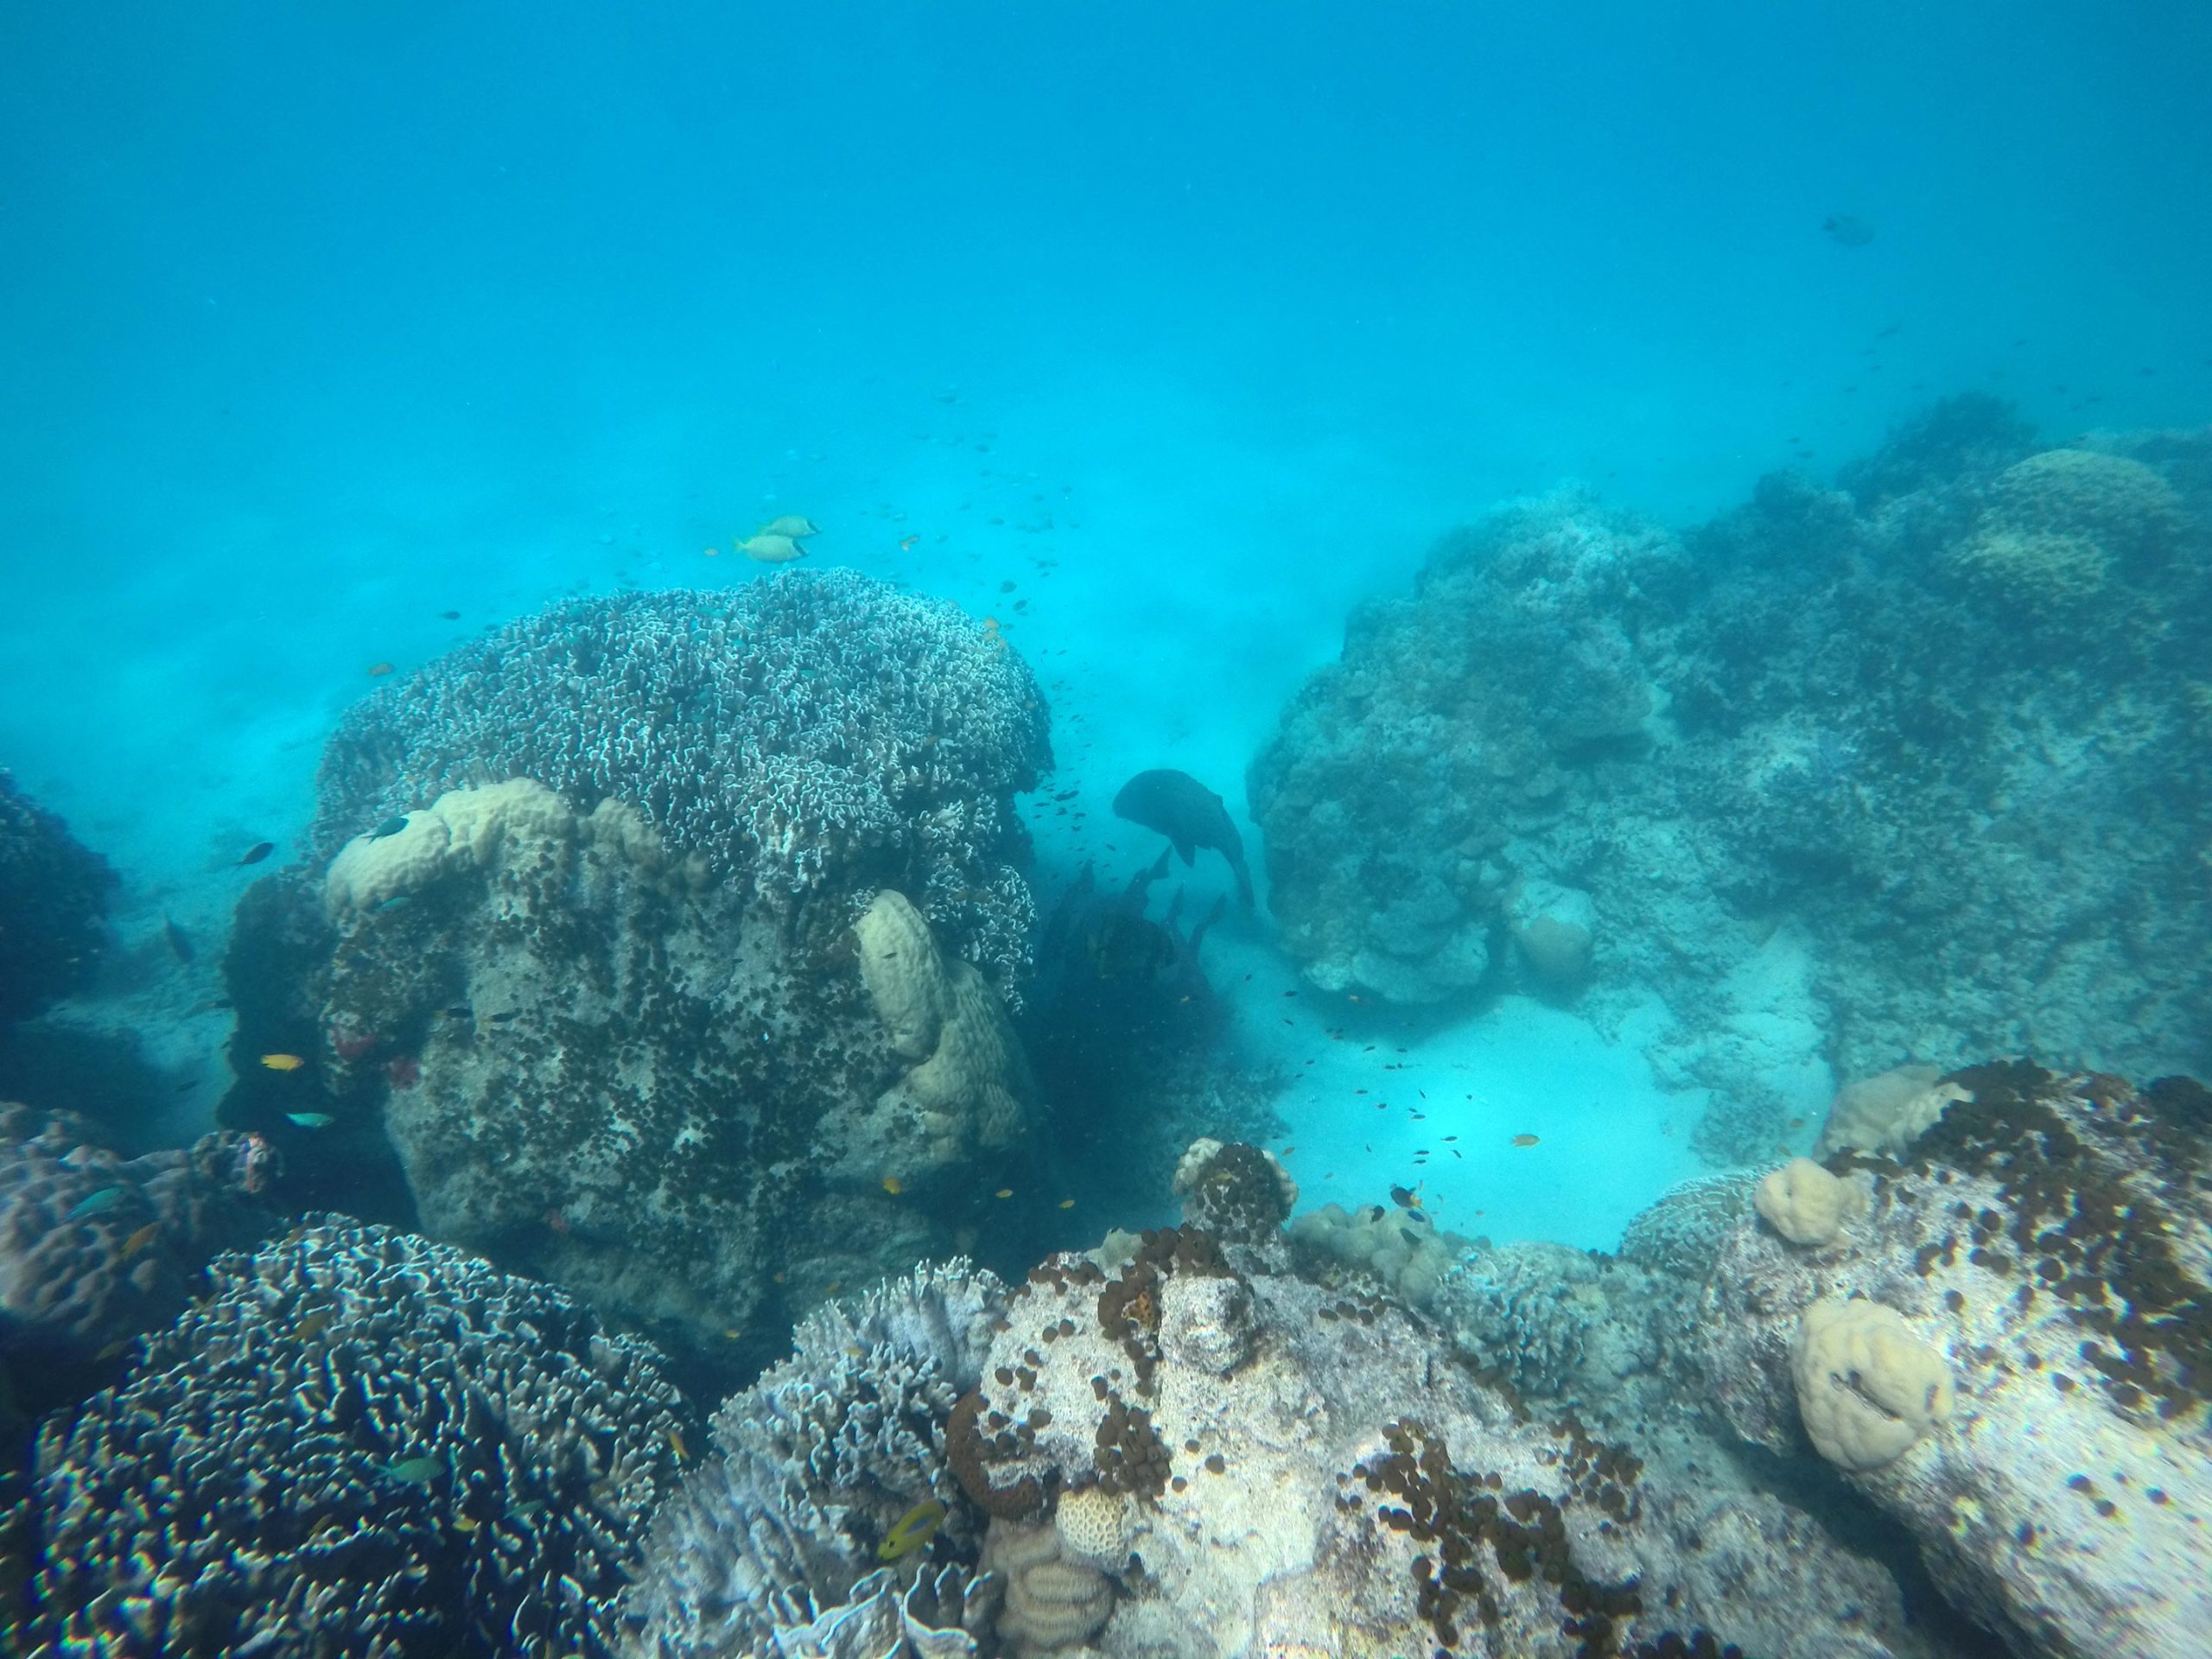 减少船只噪音可帮助珊瑚礁鱼多棘雀鲷提高繁殖率